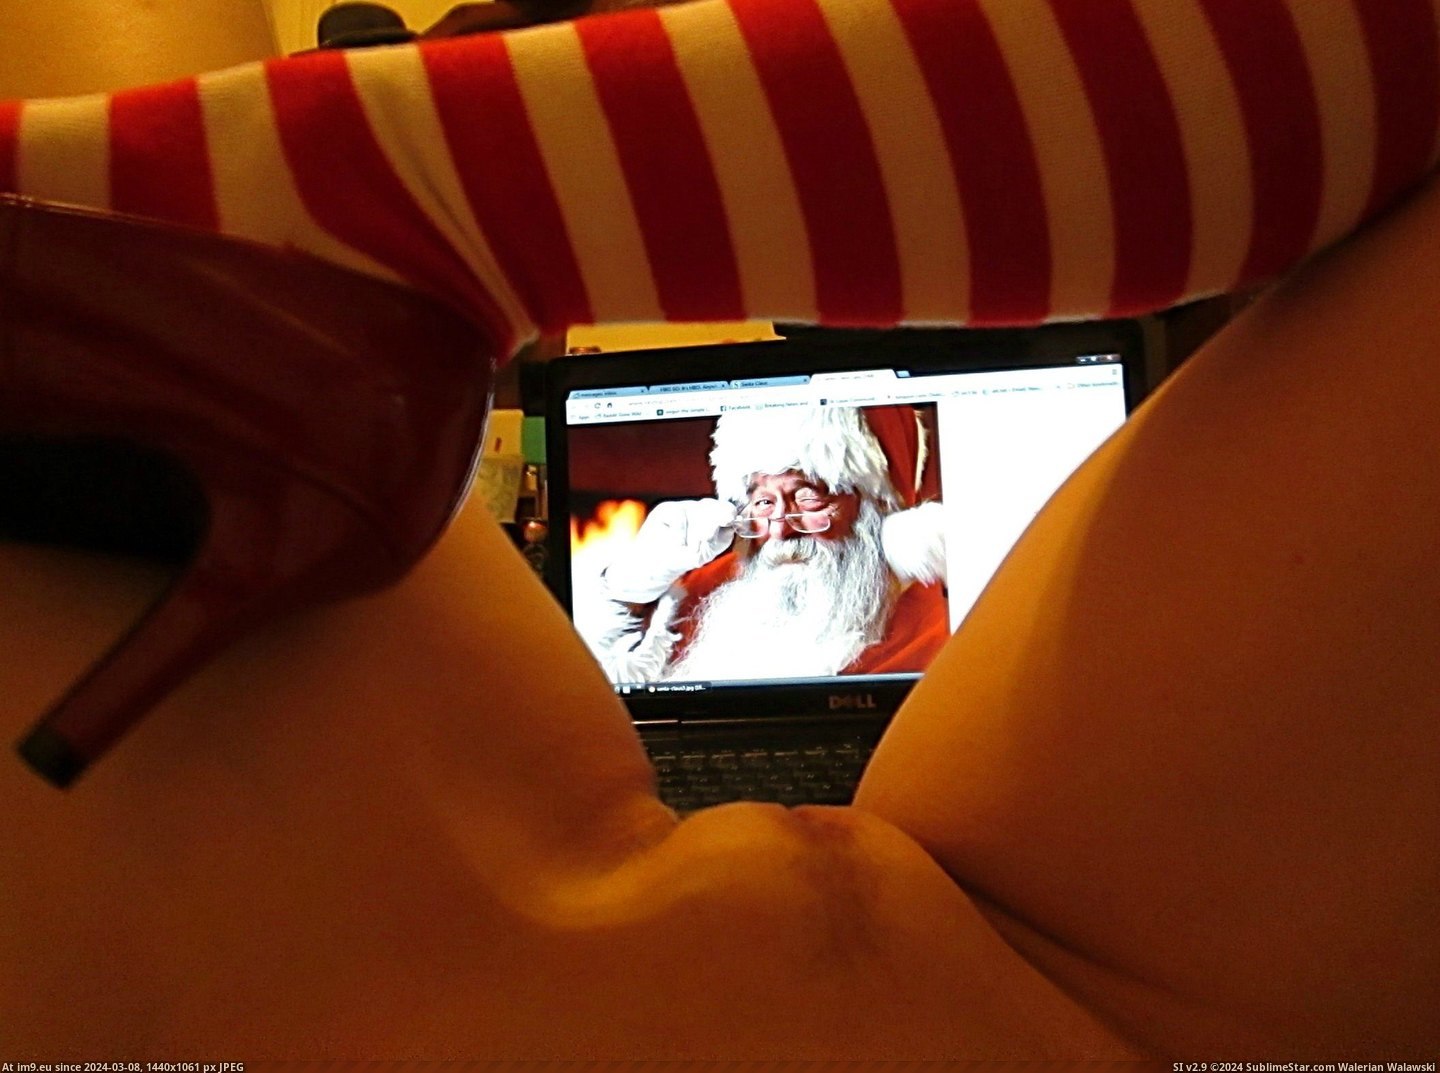 #Saw #Santa #Clause #Mommy #Lashing [Gonewild] I Saw Mommy {F}lashing Santa Clause Pic. (Obraz z album My r/GONEWILD favs))